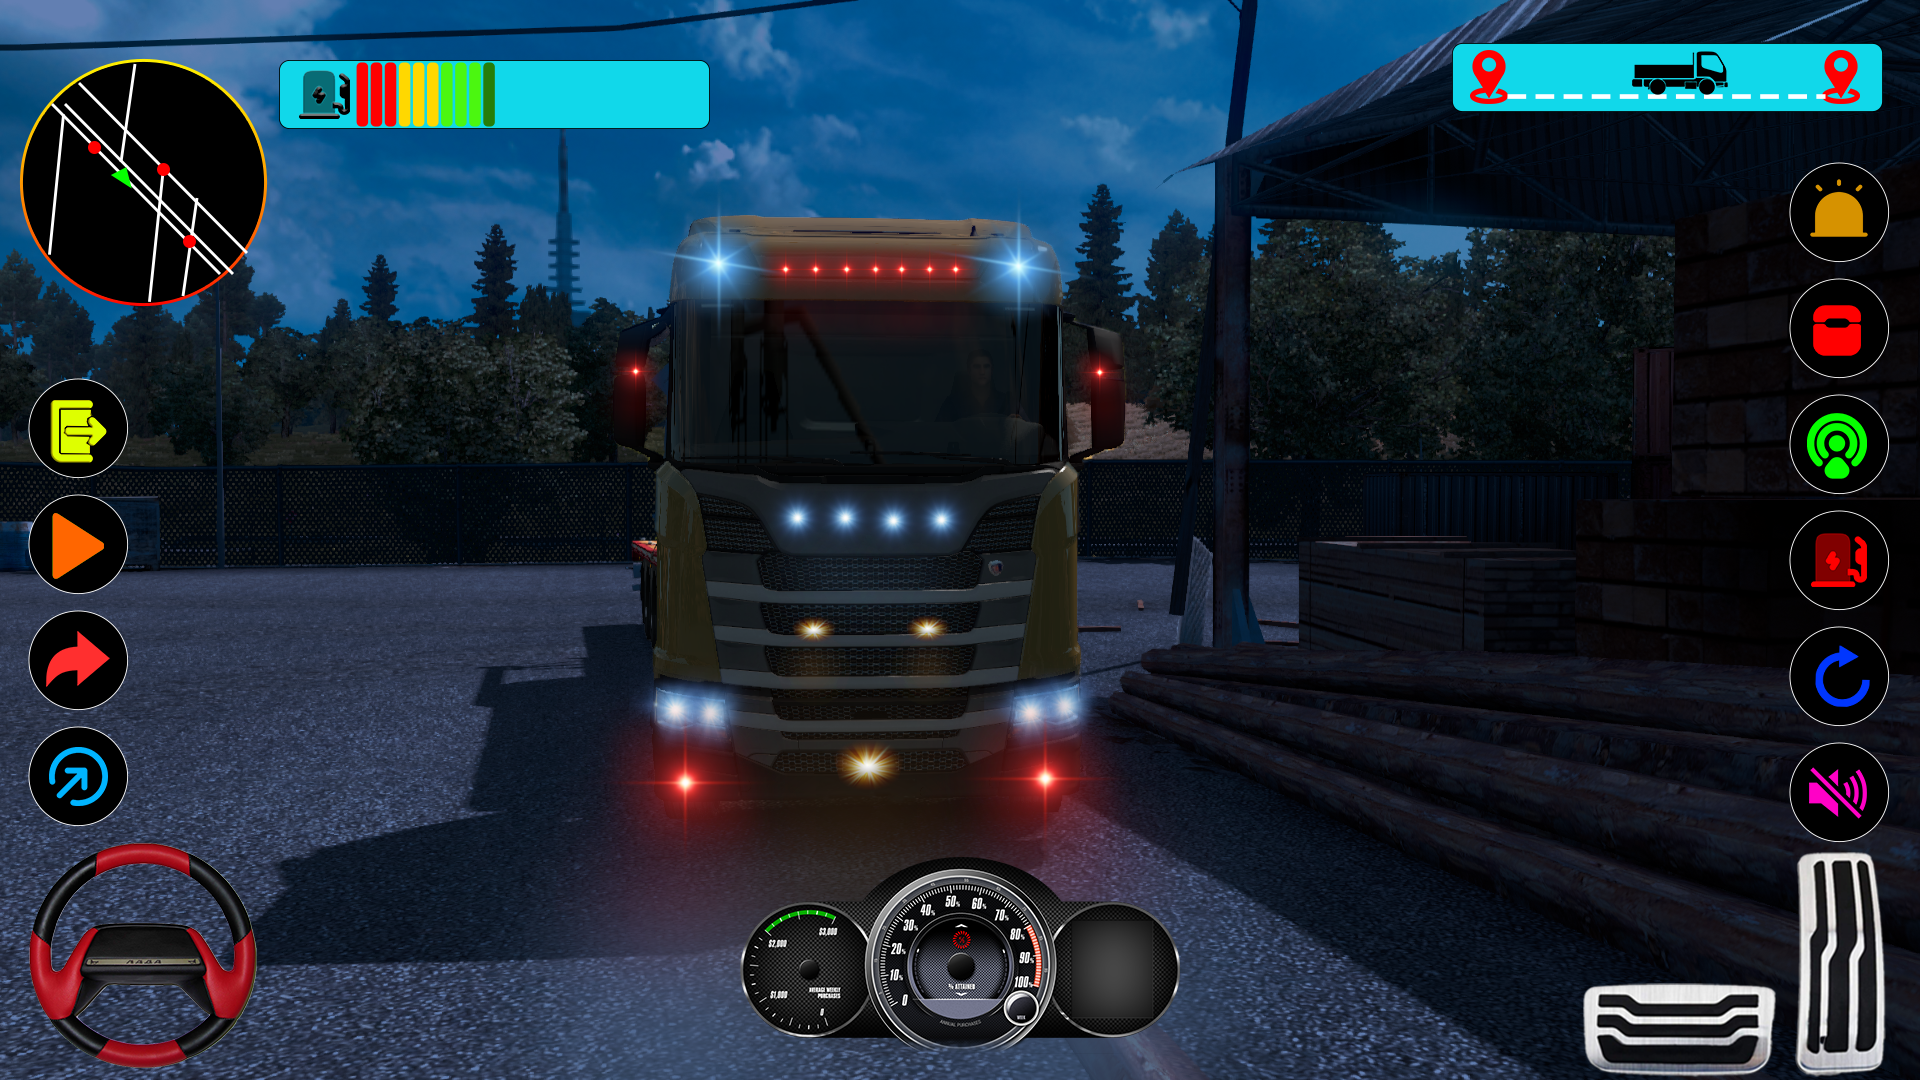 simulador de caminhão de mundo aberto real, jogos de cidade urbana:  estacionamento de caminhão offroad e simulador de transportador de carga 3D  - jogos de condução extremos::Appstore for Android